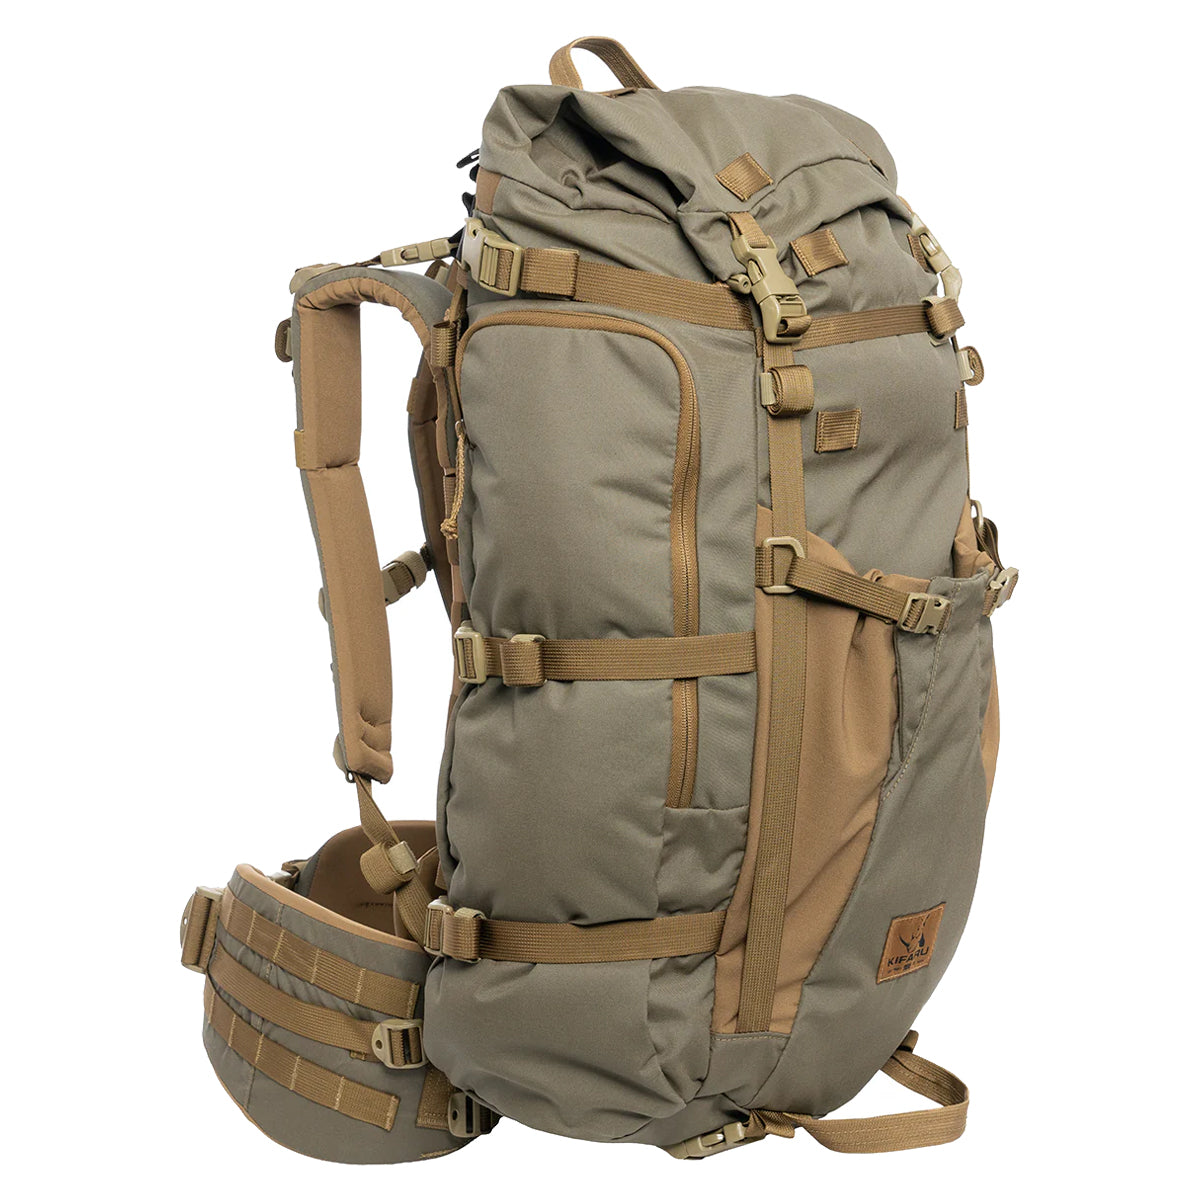 Kifaru Bedlam Backpack Combo in  by GOHUNT | Kifaru - GOHUNT Shop